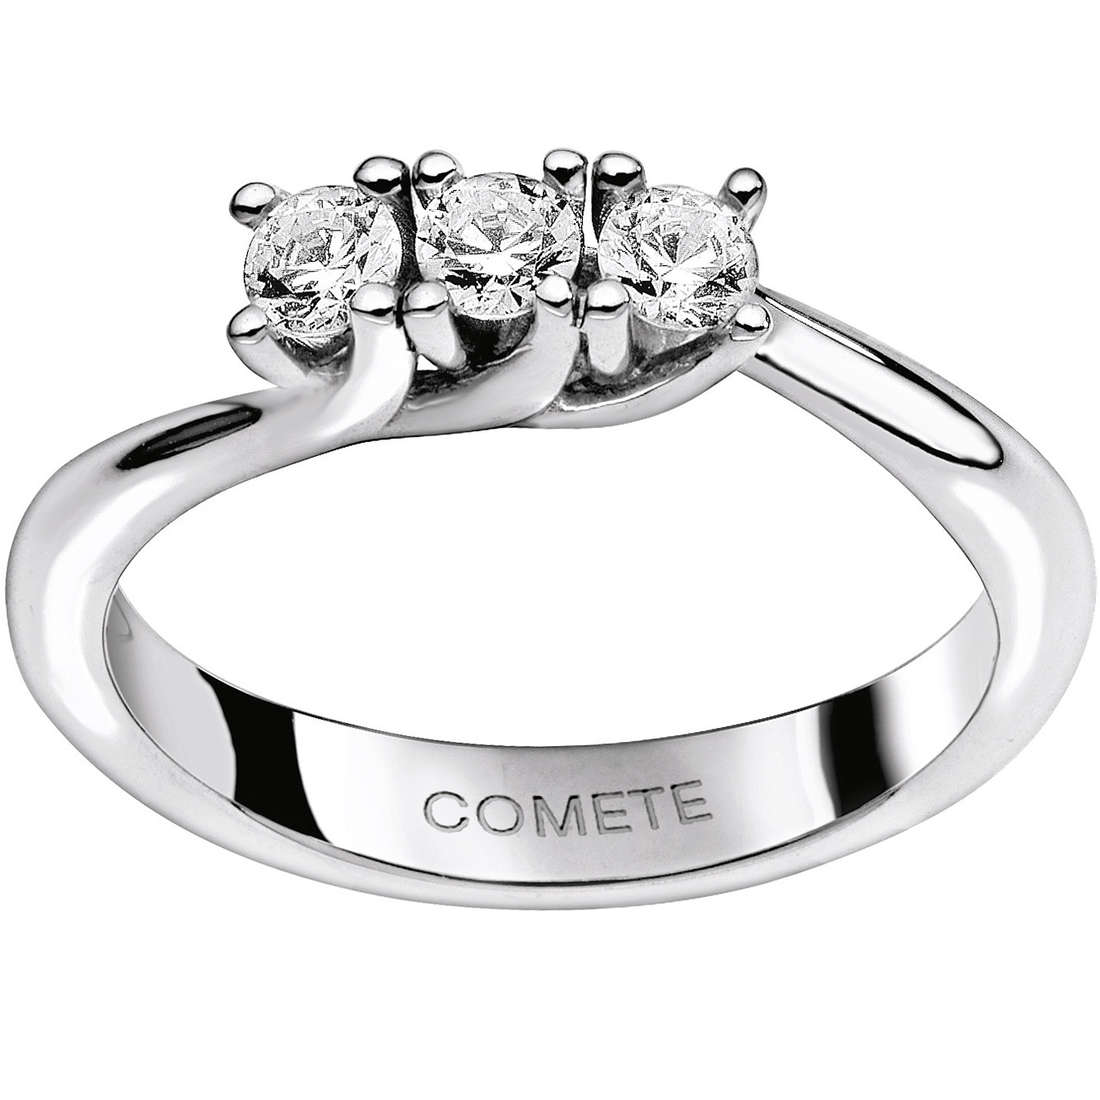 Women's Ring Comete Gioielli Trilogy ANB 1027